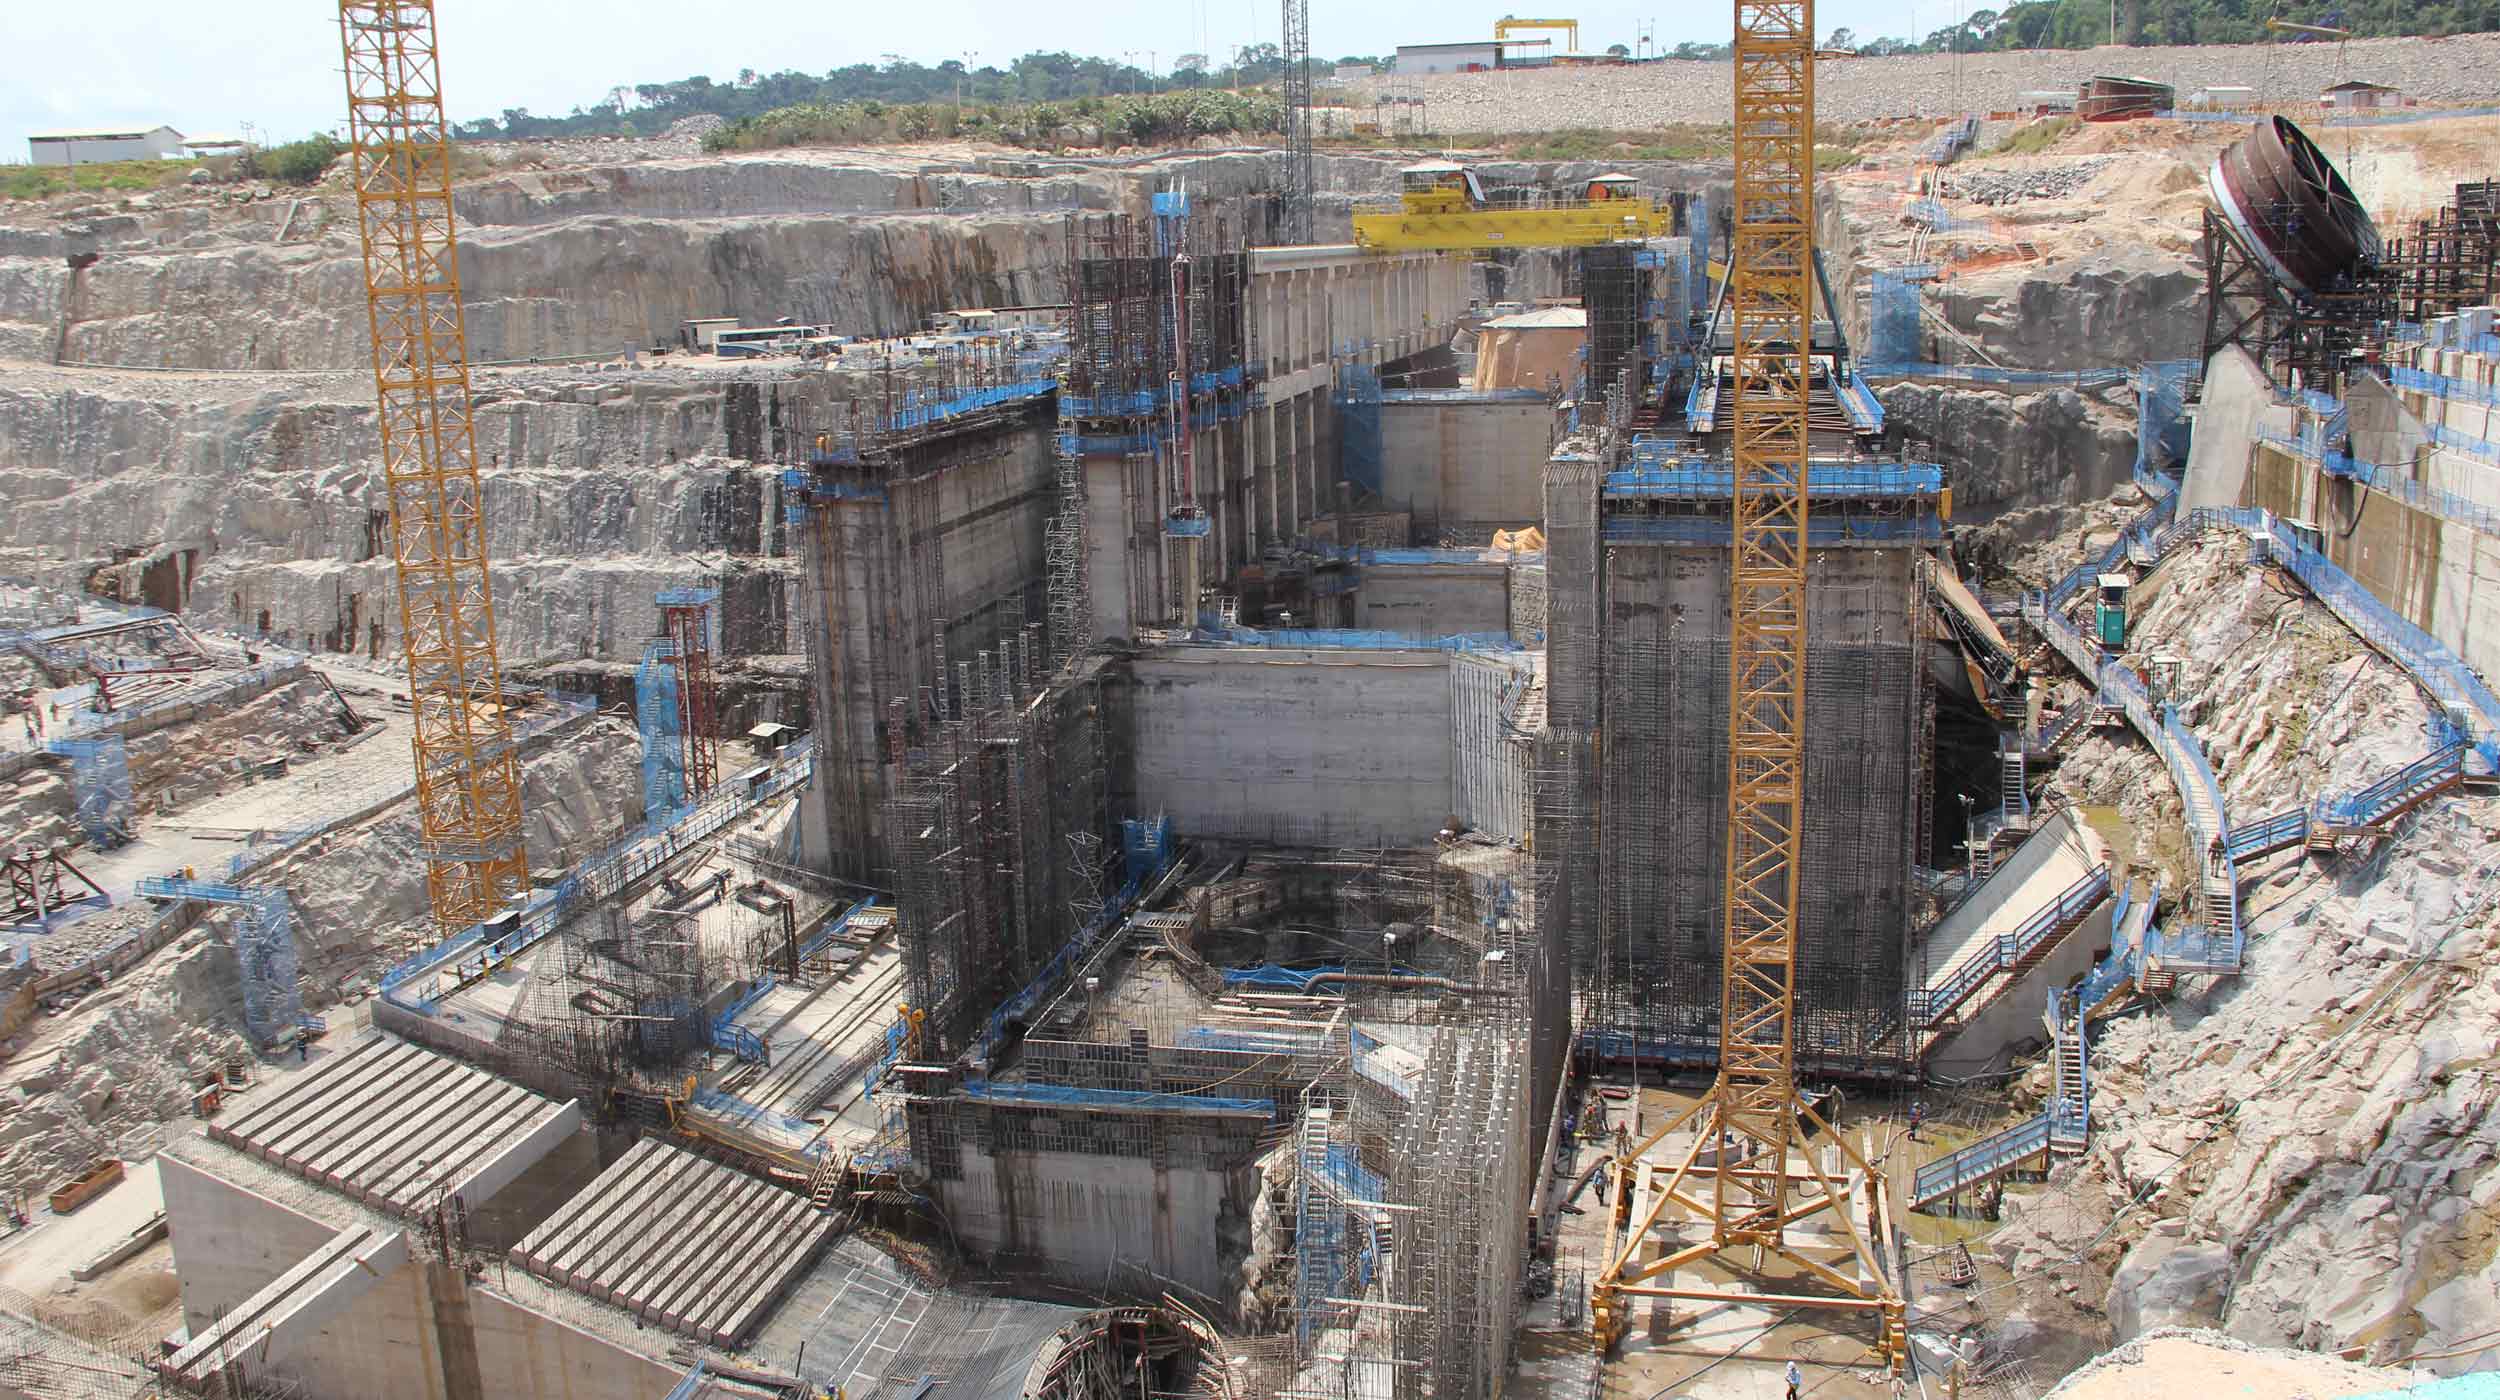 La planta hidroeléctrica Teles Pires, forma parte del plan de infraestructuras contempladas en el Programa de Aceleración del Crecimiento (PAC) del Gobierno Federal de Brasil.